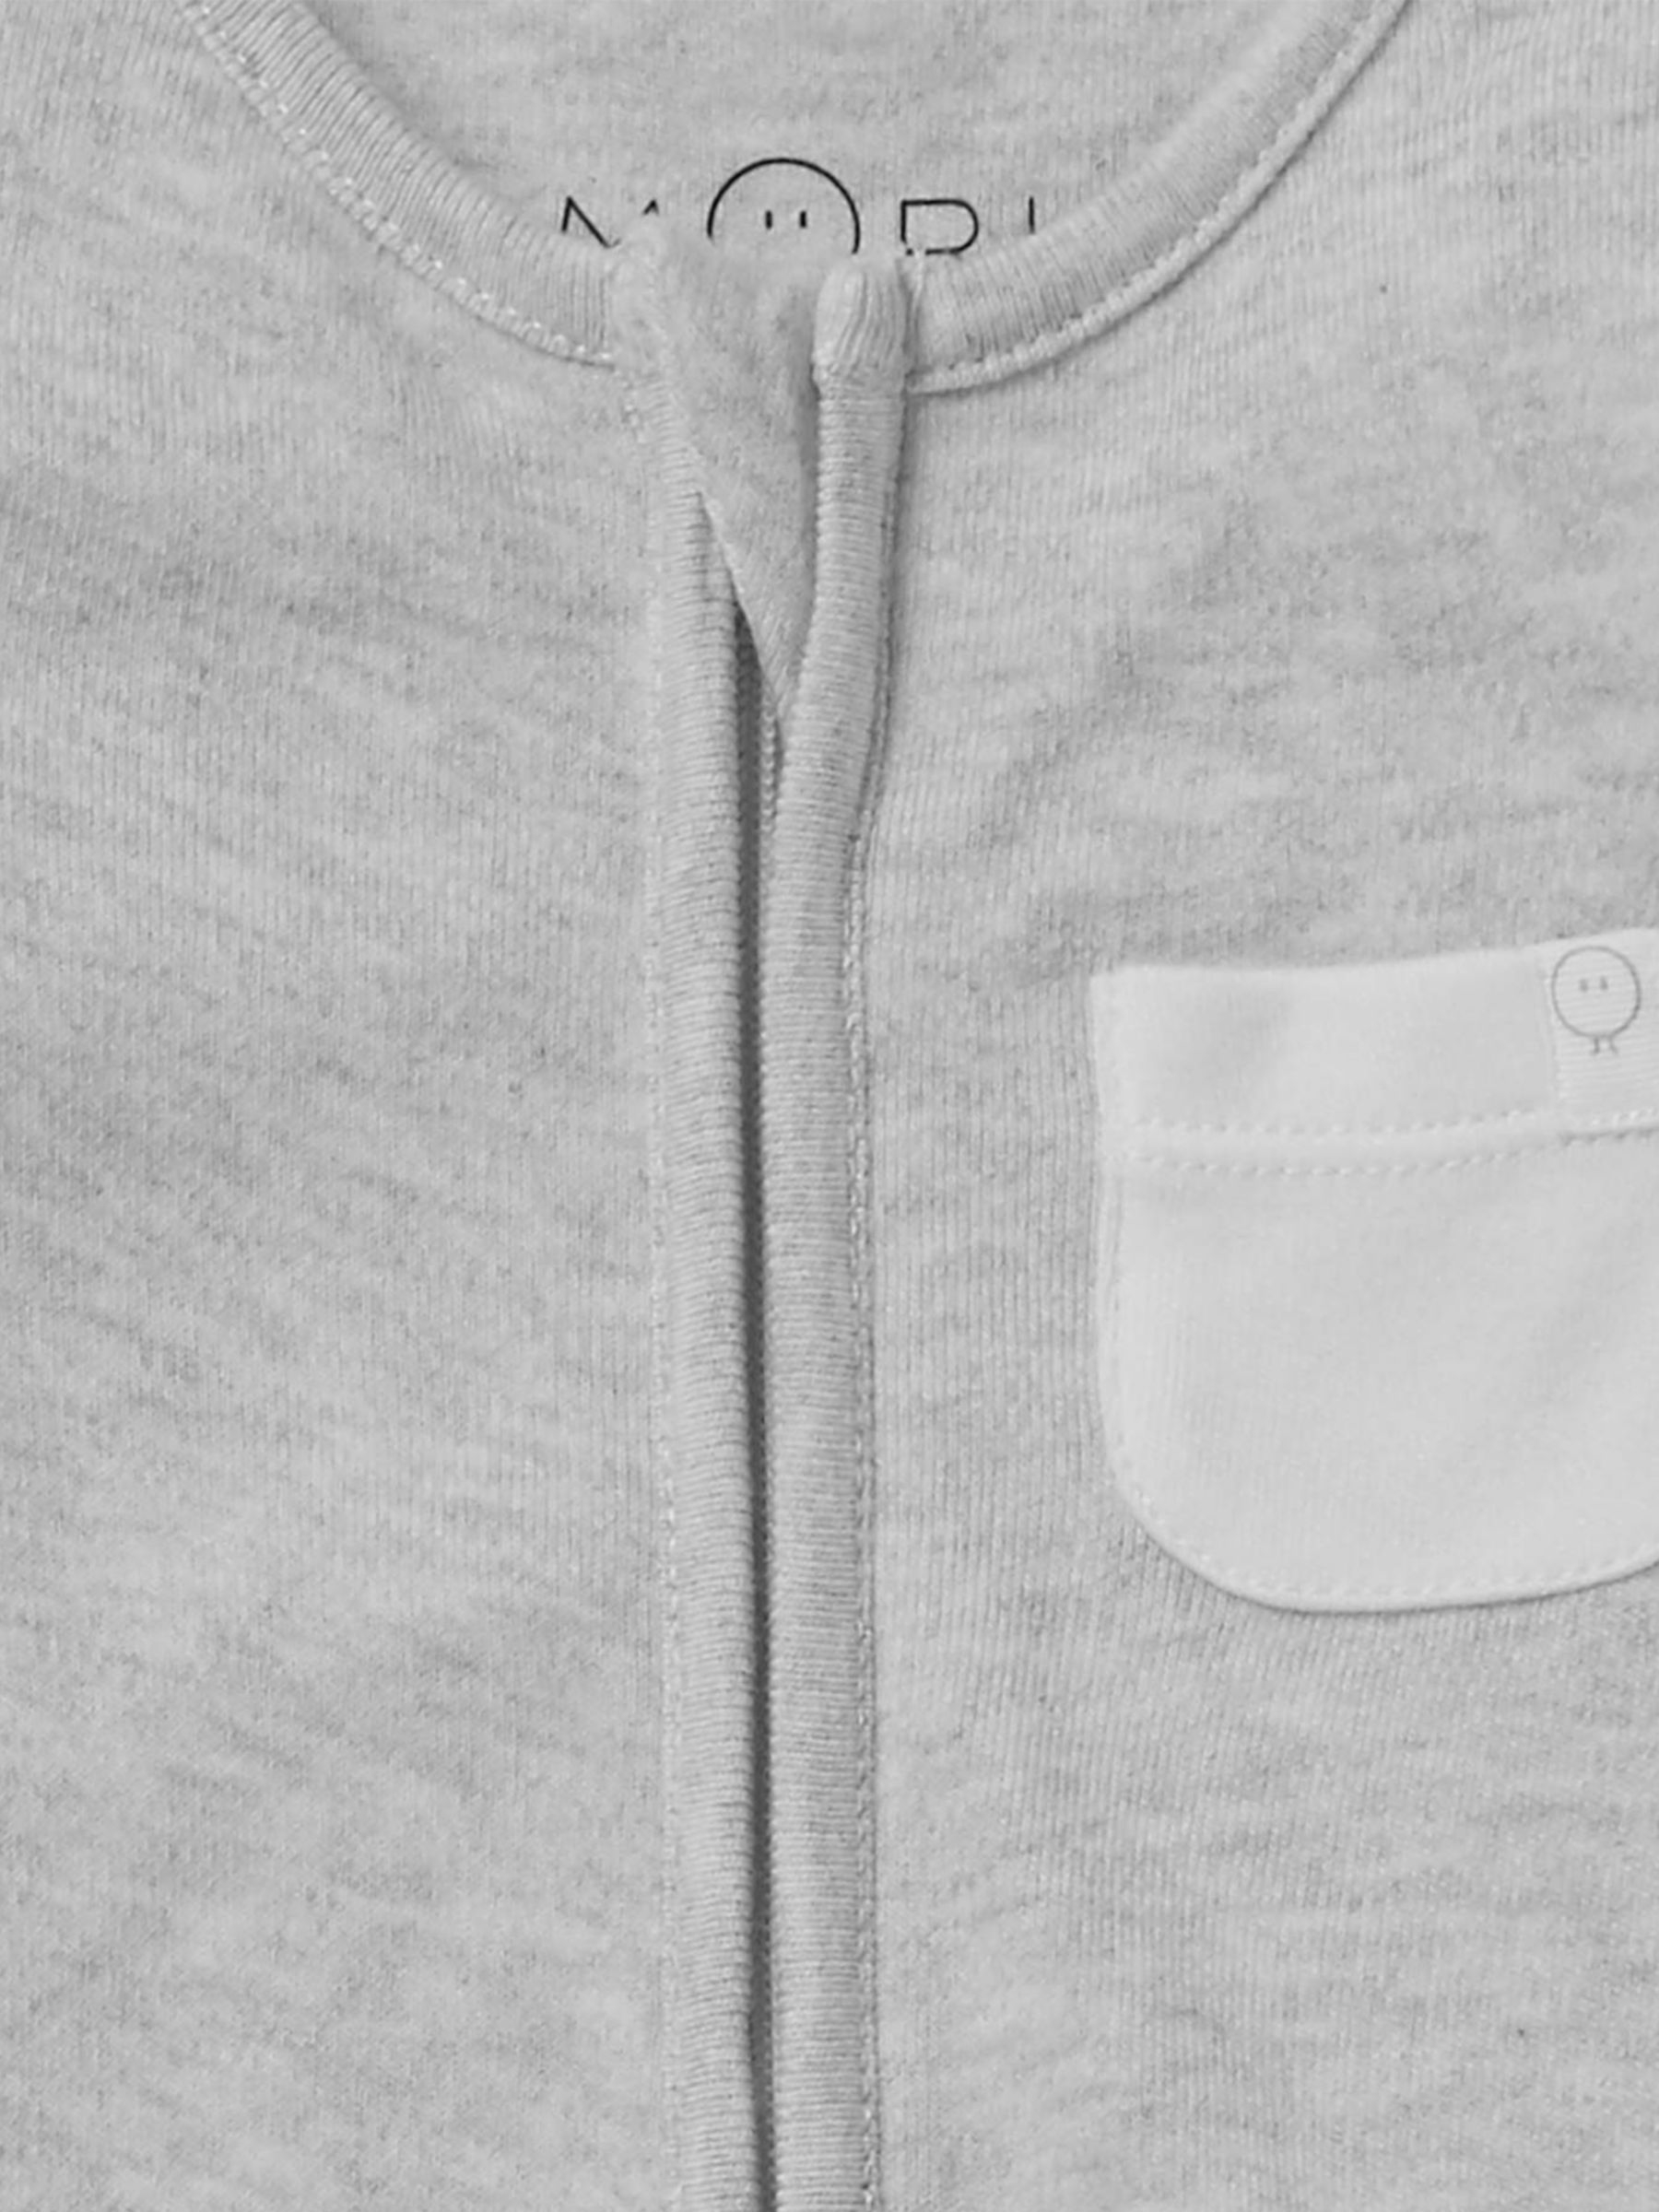 MORI Baby Clever Zip Pocket Sleepsuit, Grey, 9-12 months